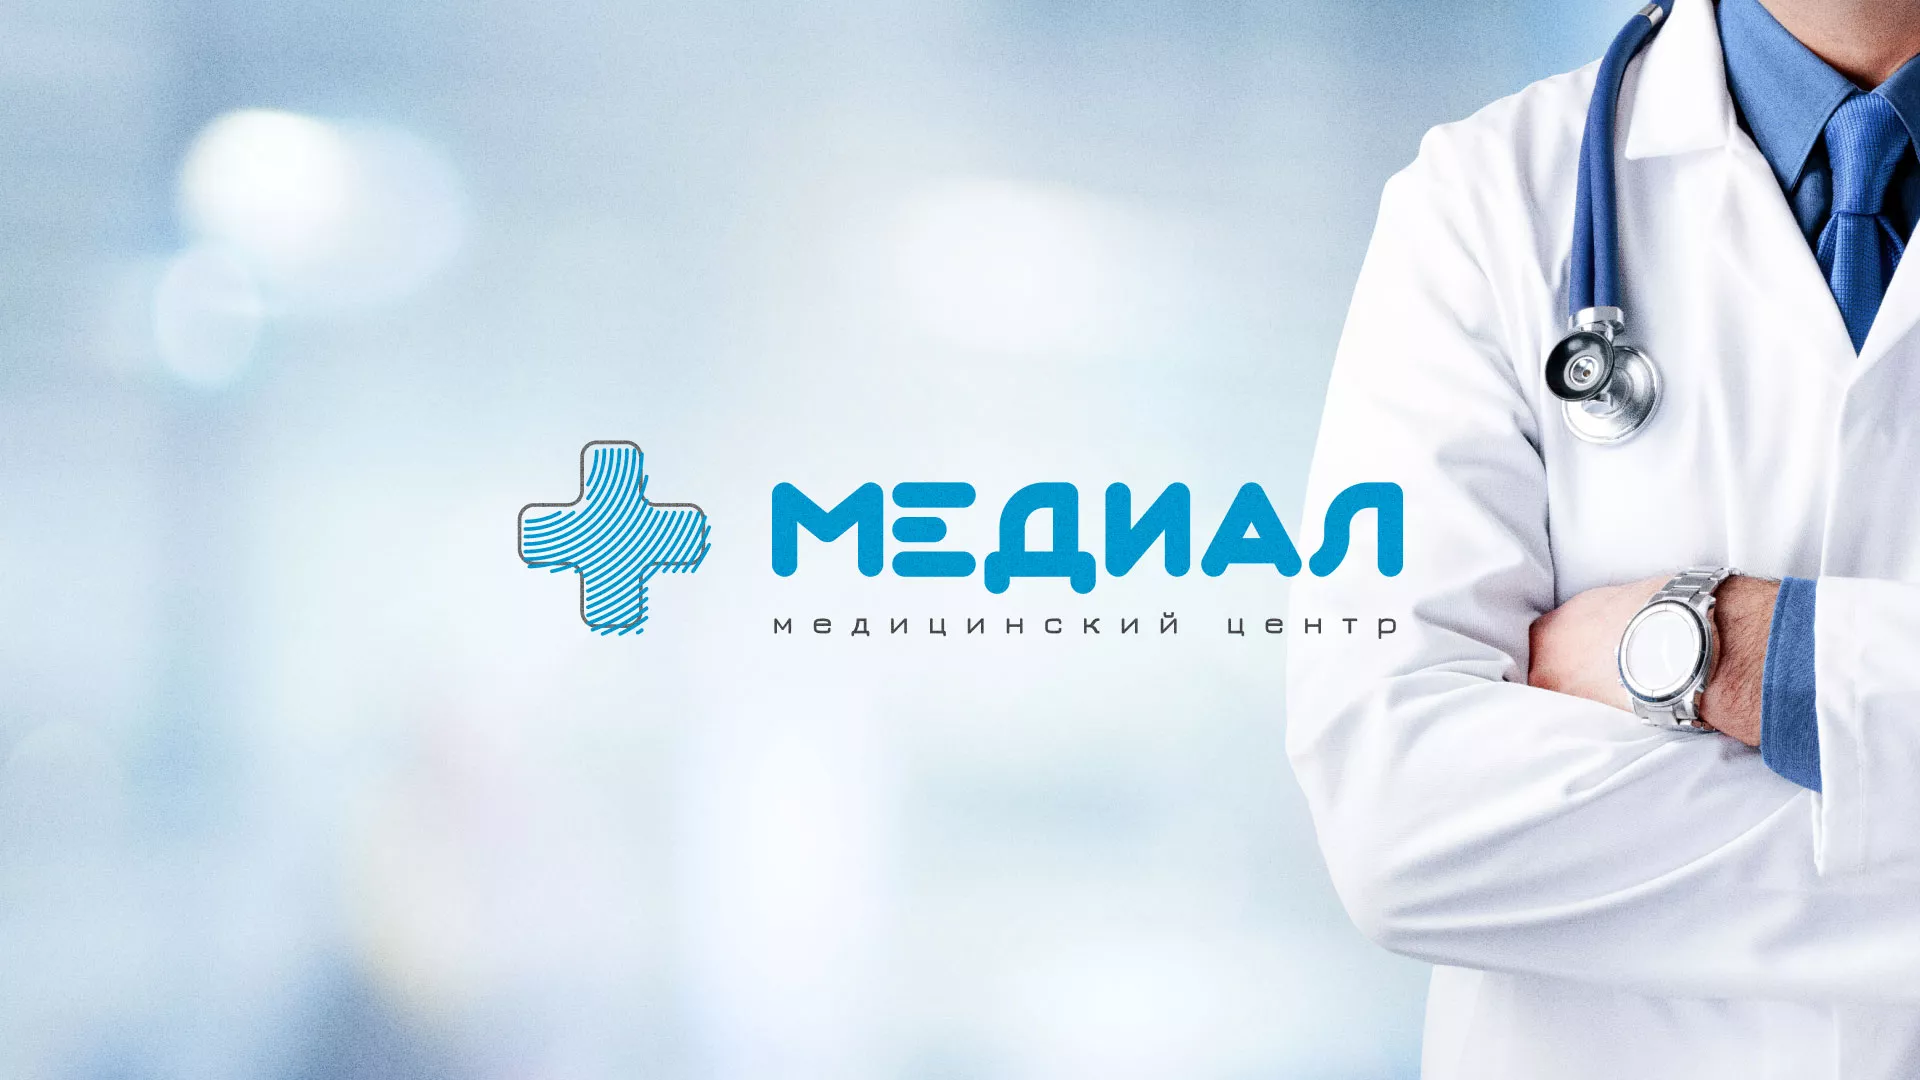 Создание сайта для медицинского центра «Медиал» в Кирове